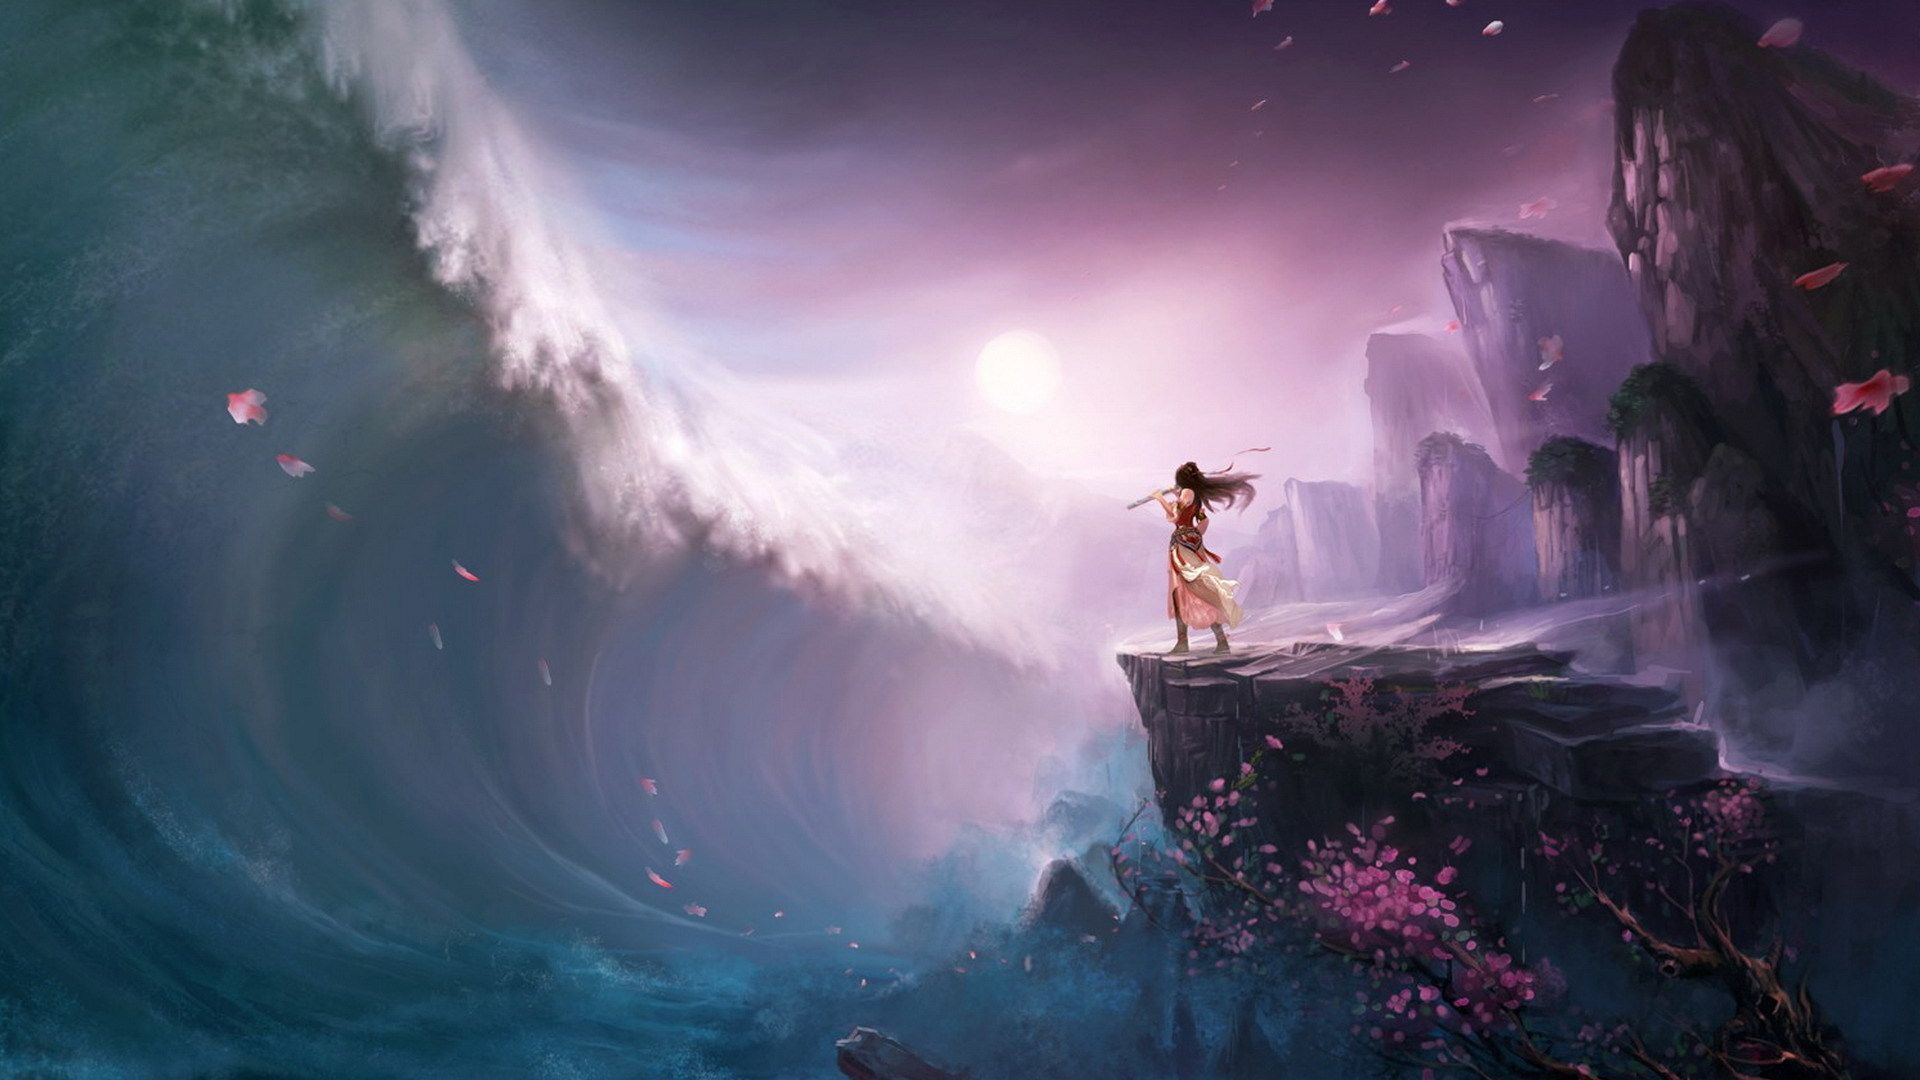 تصویر انیمیشنی از فلوت زدن سرخپوست و امواج سونامی اقیانوس